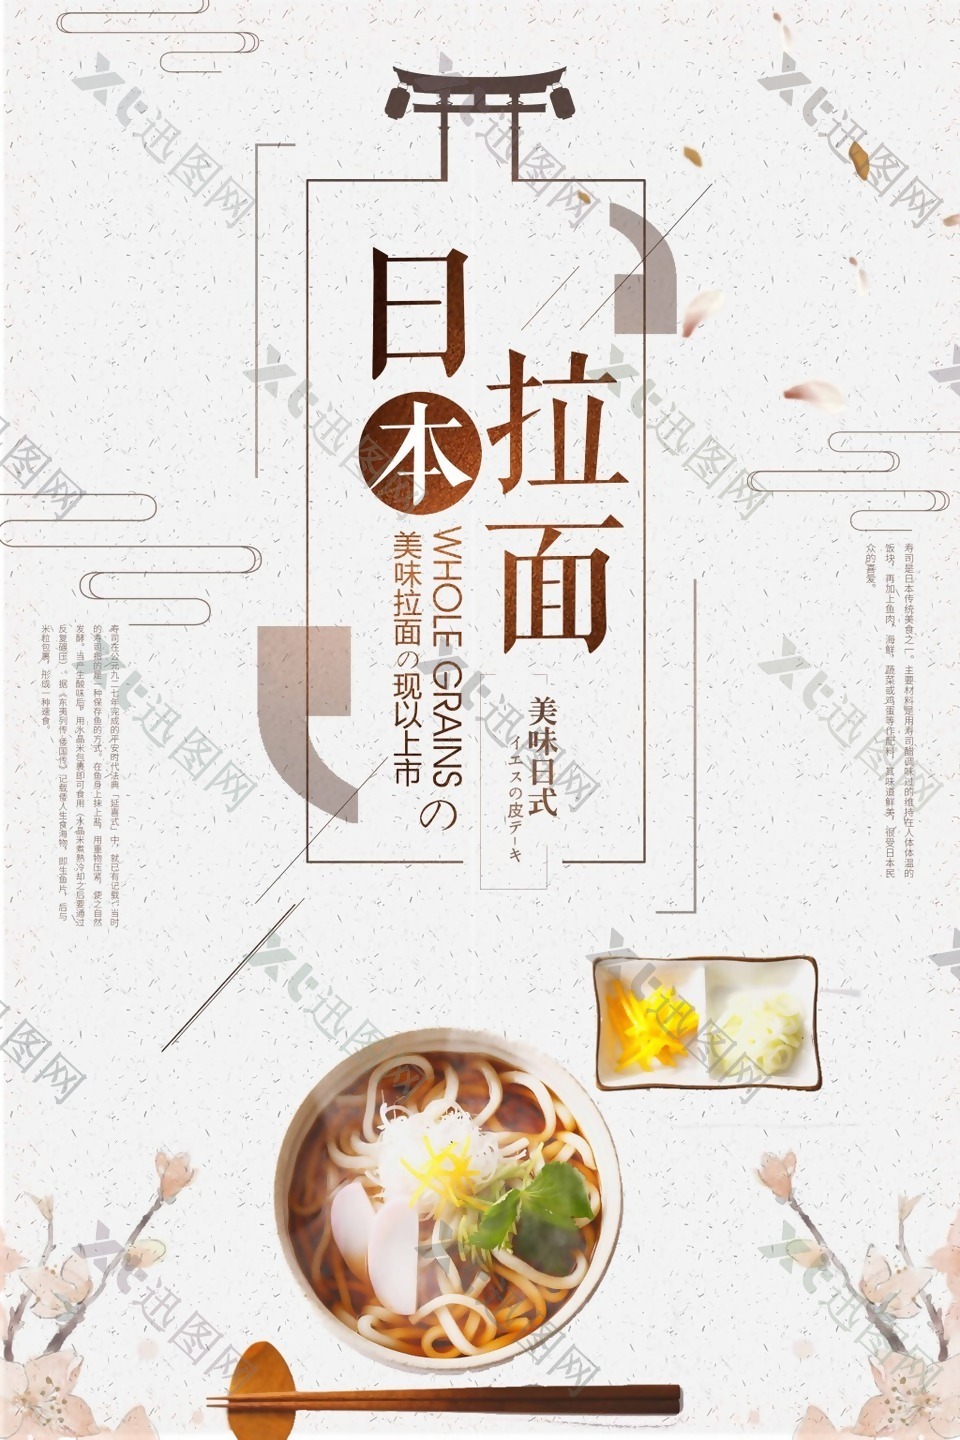 简洁日本美食拉面海报设计